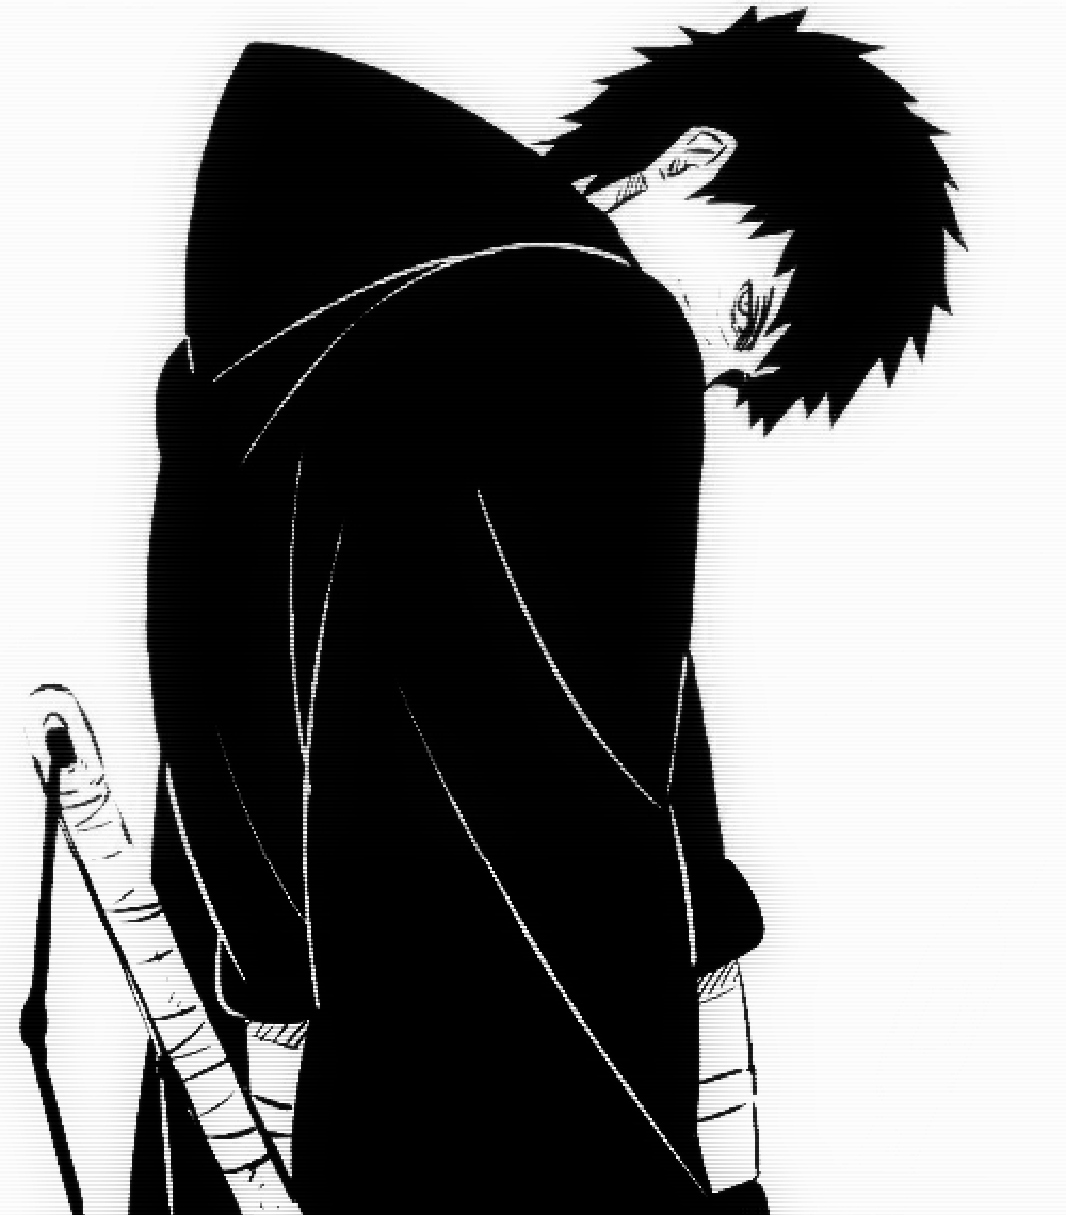 obito wallpaper iphone,erfundener charakter,schwarz und weiß,illustration,anime,schwarzes haar